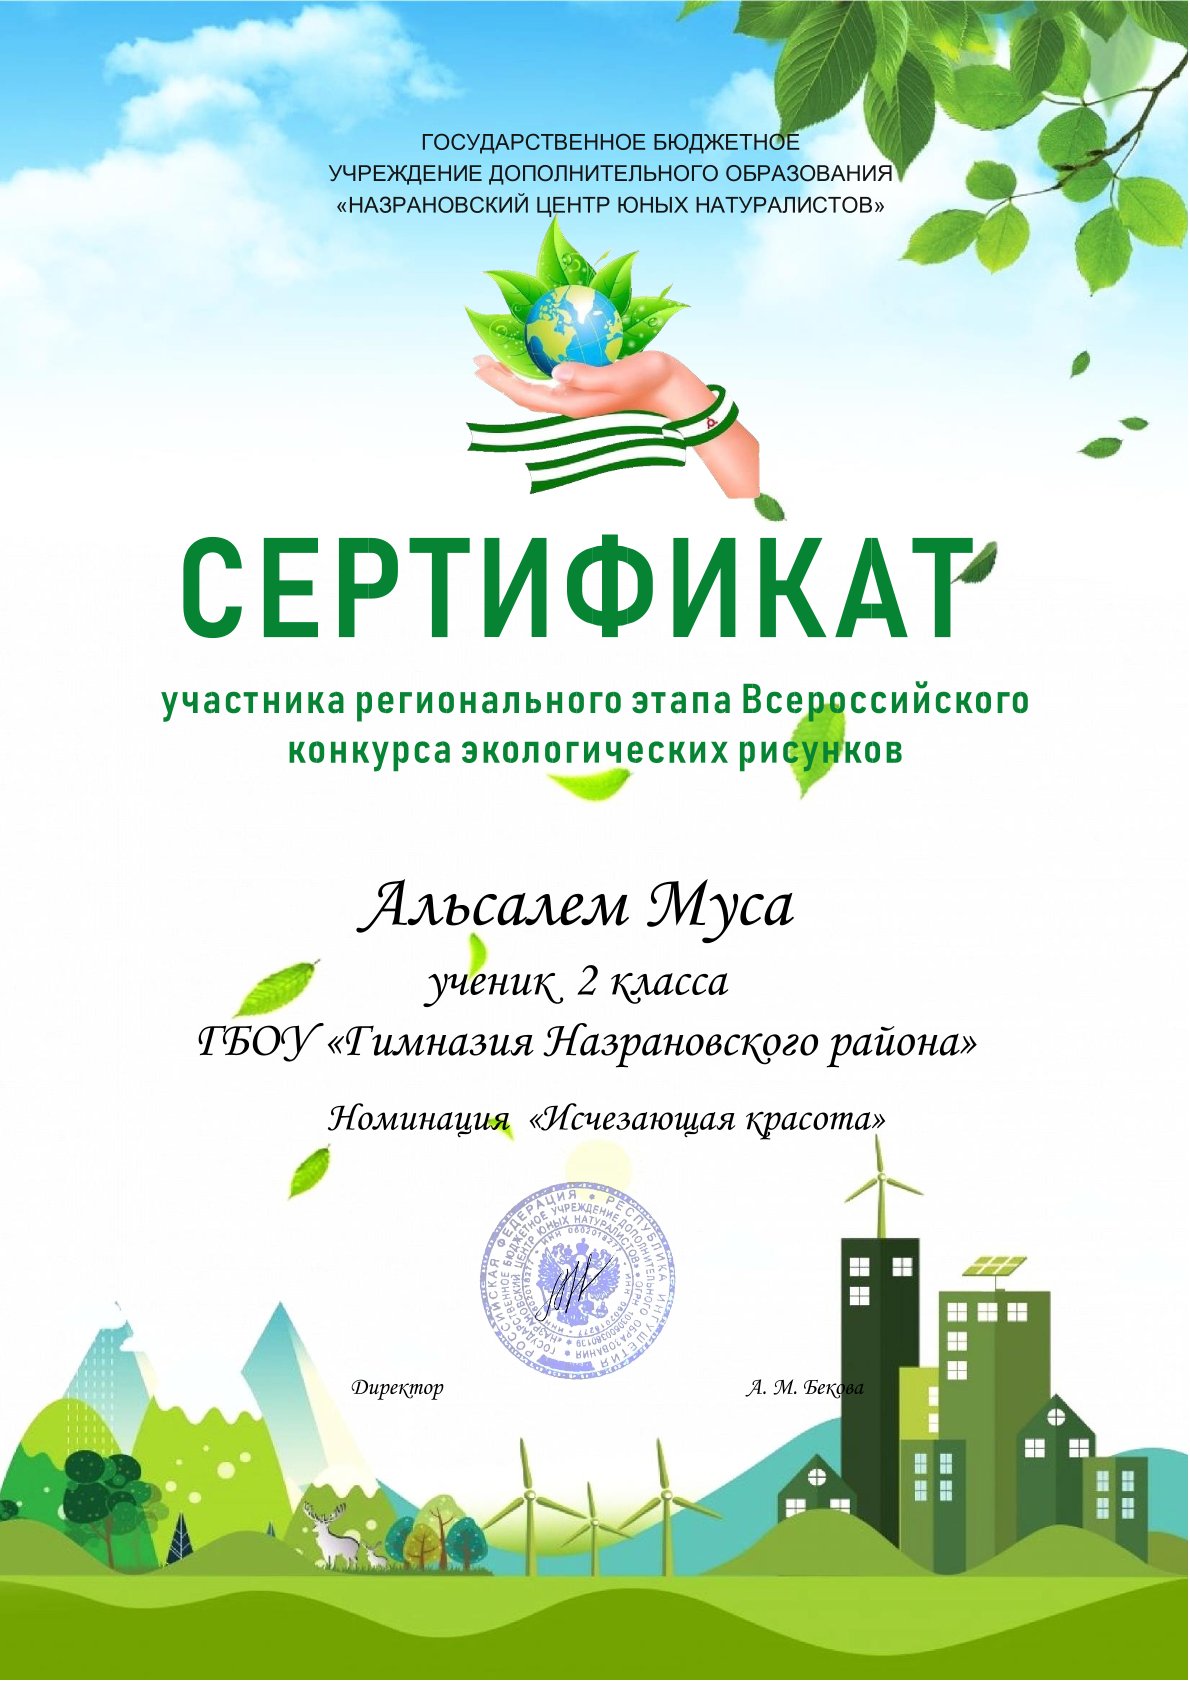 Всероссийский  конкурс экологических рисунков.